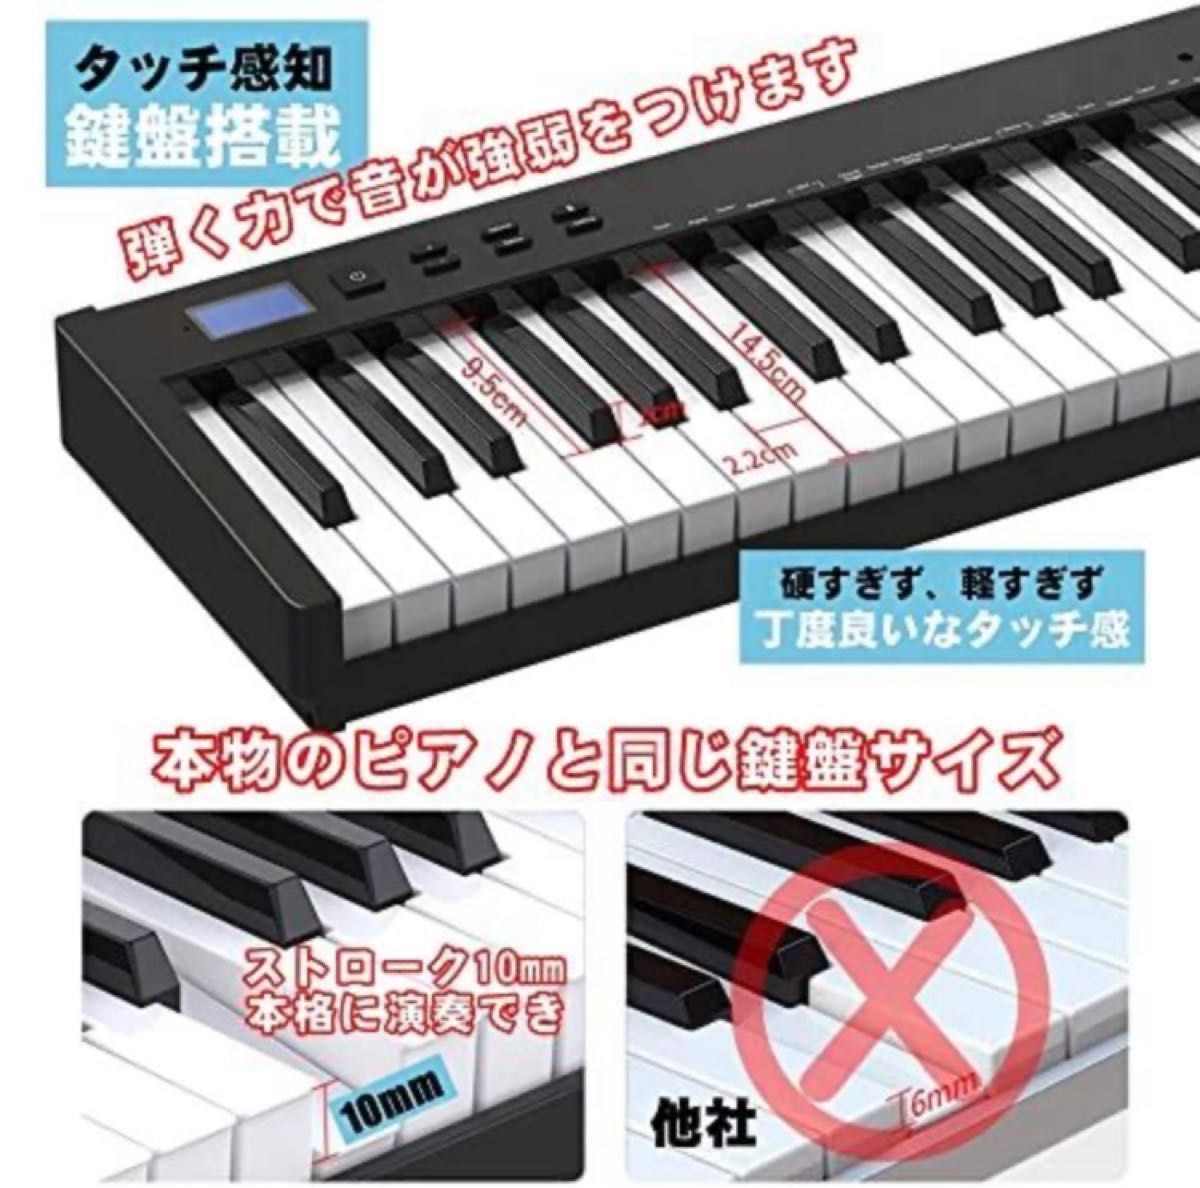 たっくんママ様専用【48時間以内発送】ニコマク NikoMaku 電子ピアノ 88鍵盤 SWAN-S